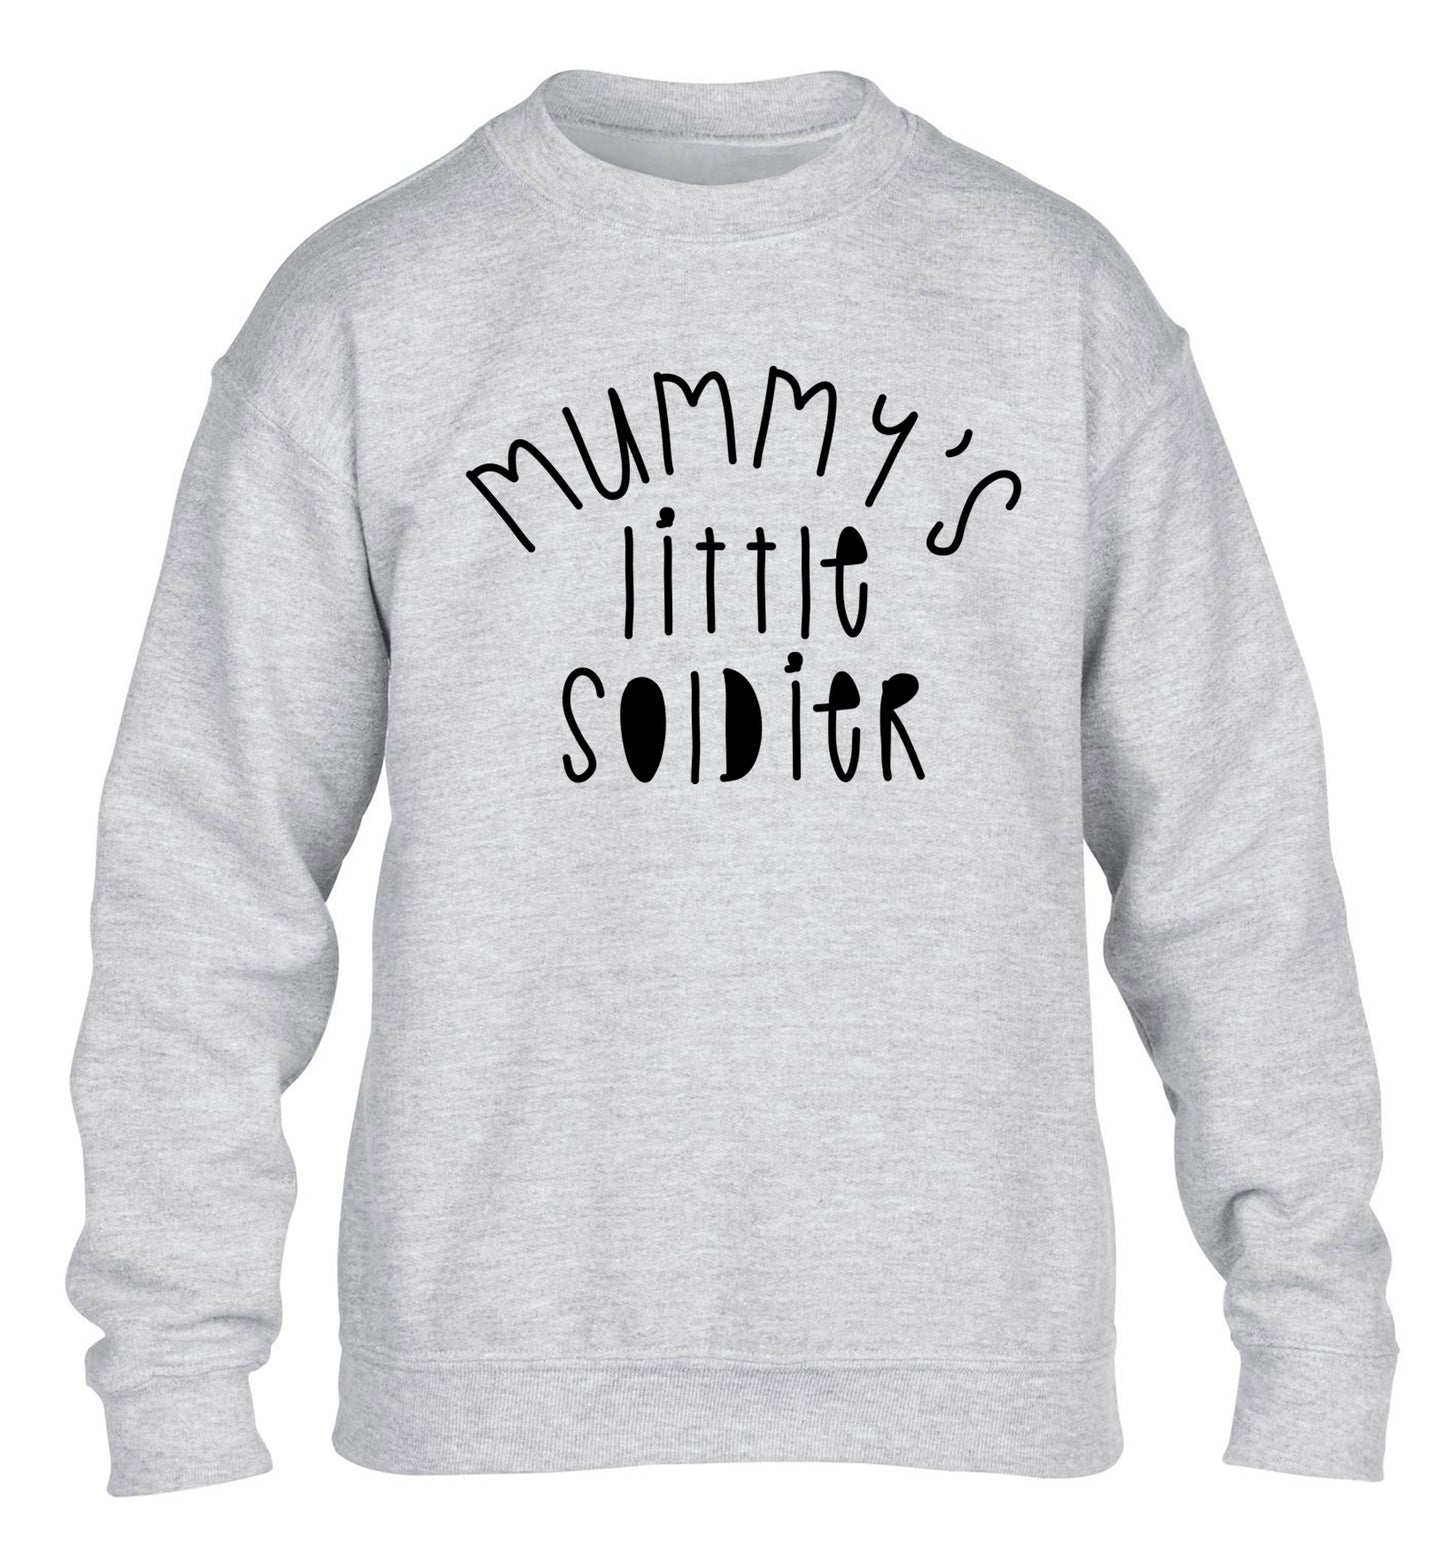 Mummy's little soldier children's grey sweater 12-14 Years